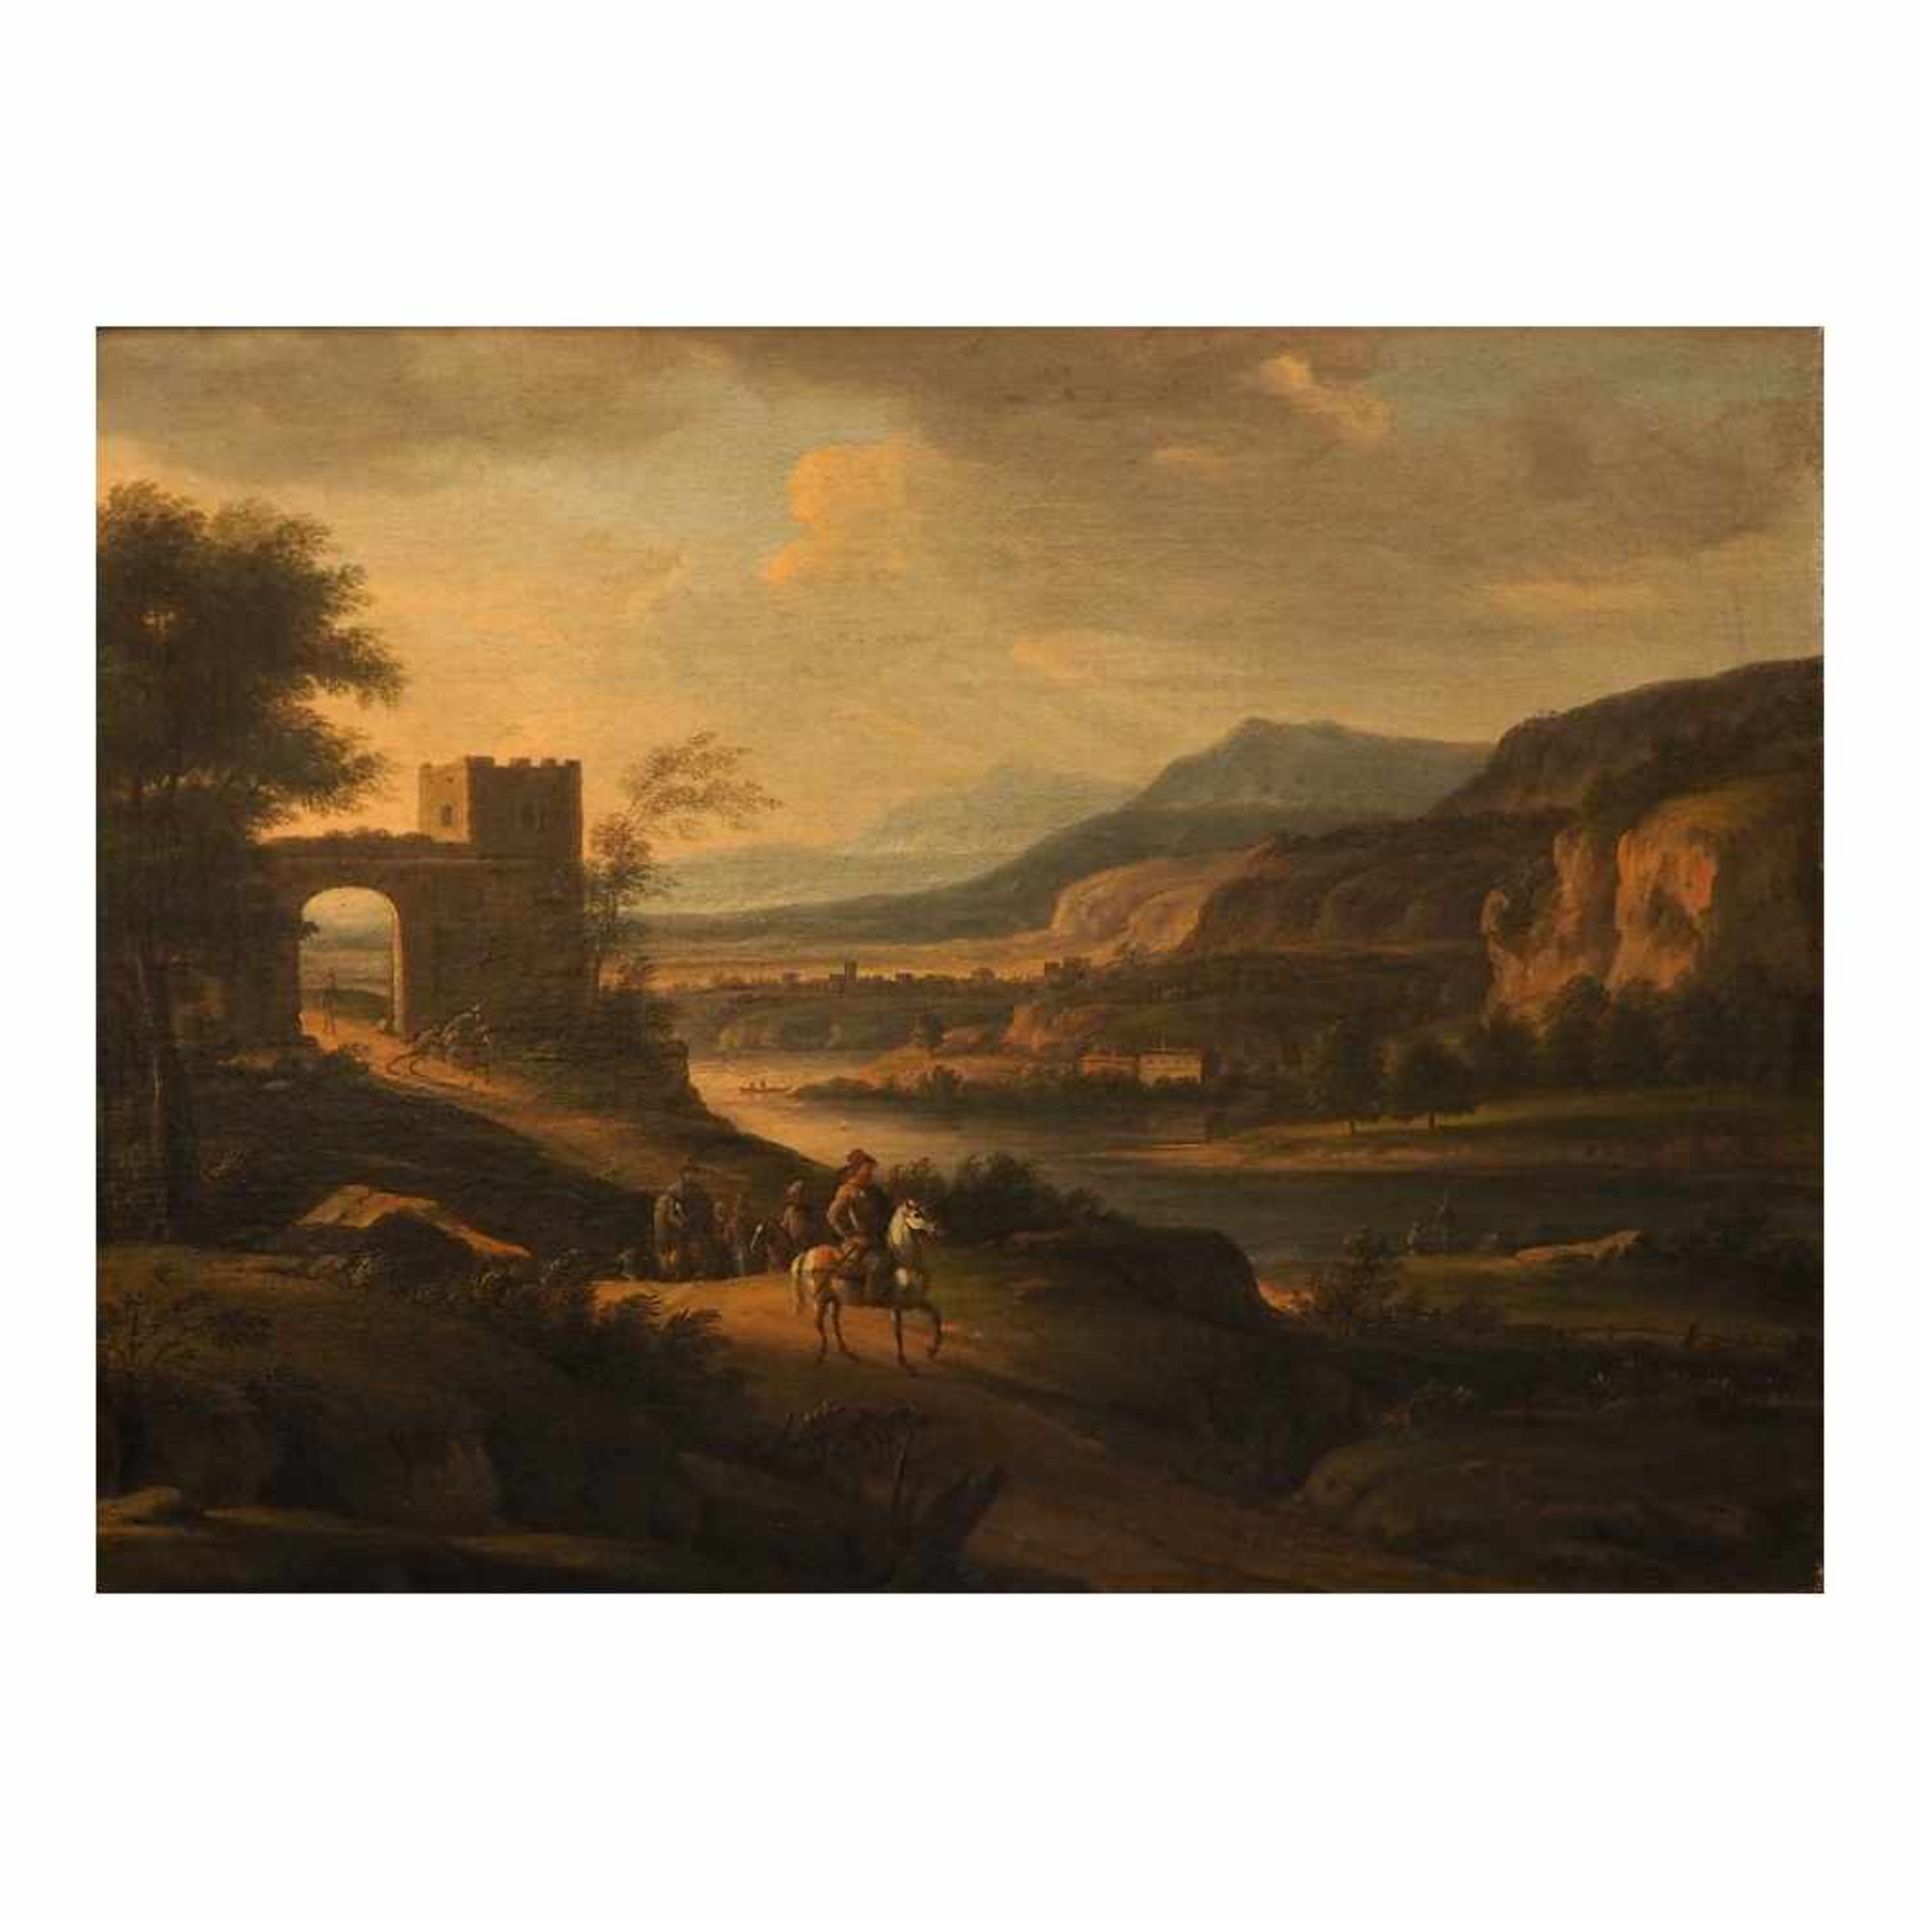 1 Ölgemälde "Arkadische Landschaft mit Reiterstaffage" unsign.(wohl Peter VON BEMMEL 1685-1754) Öl/